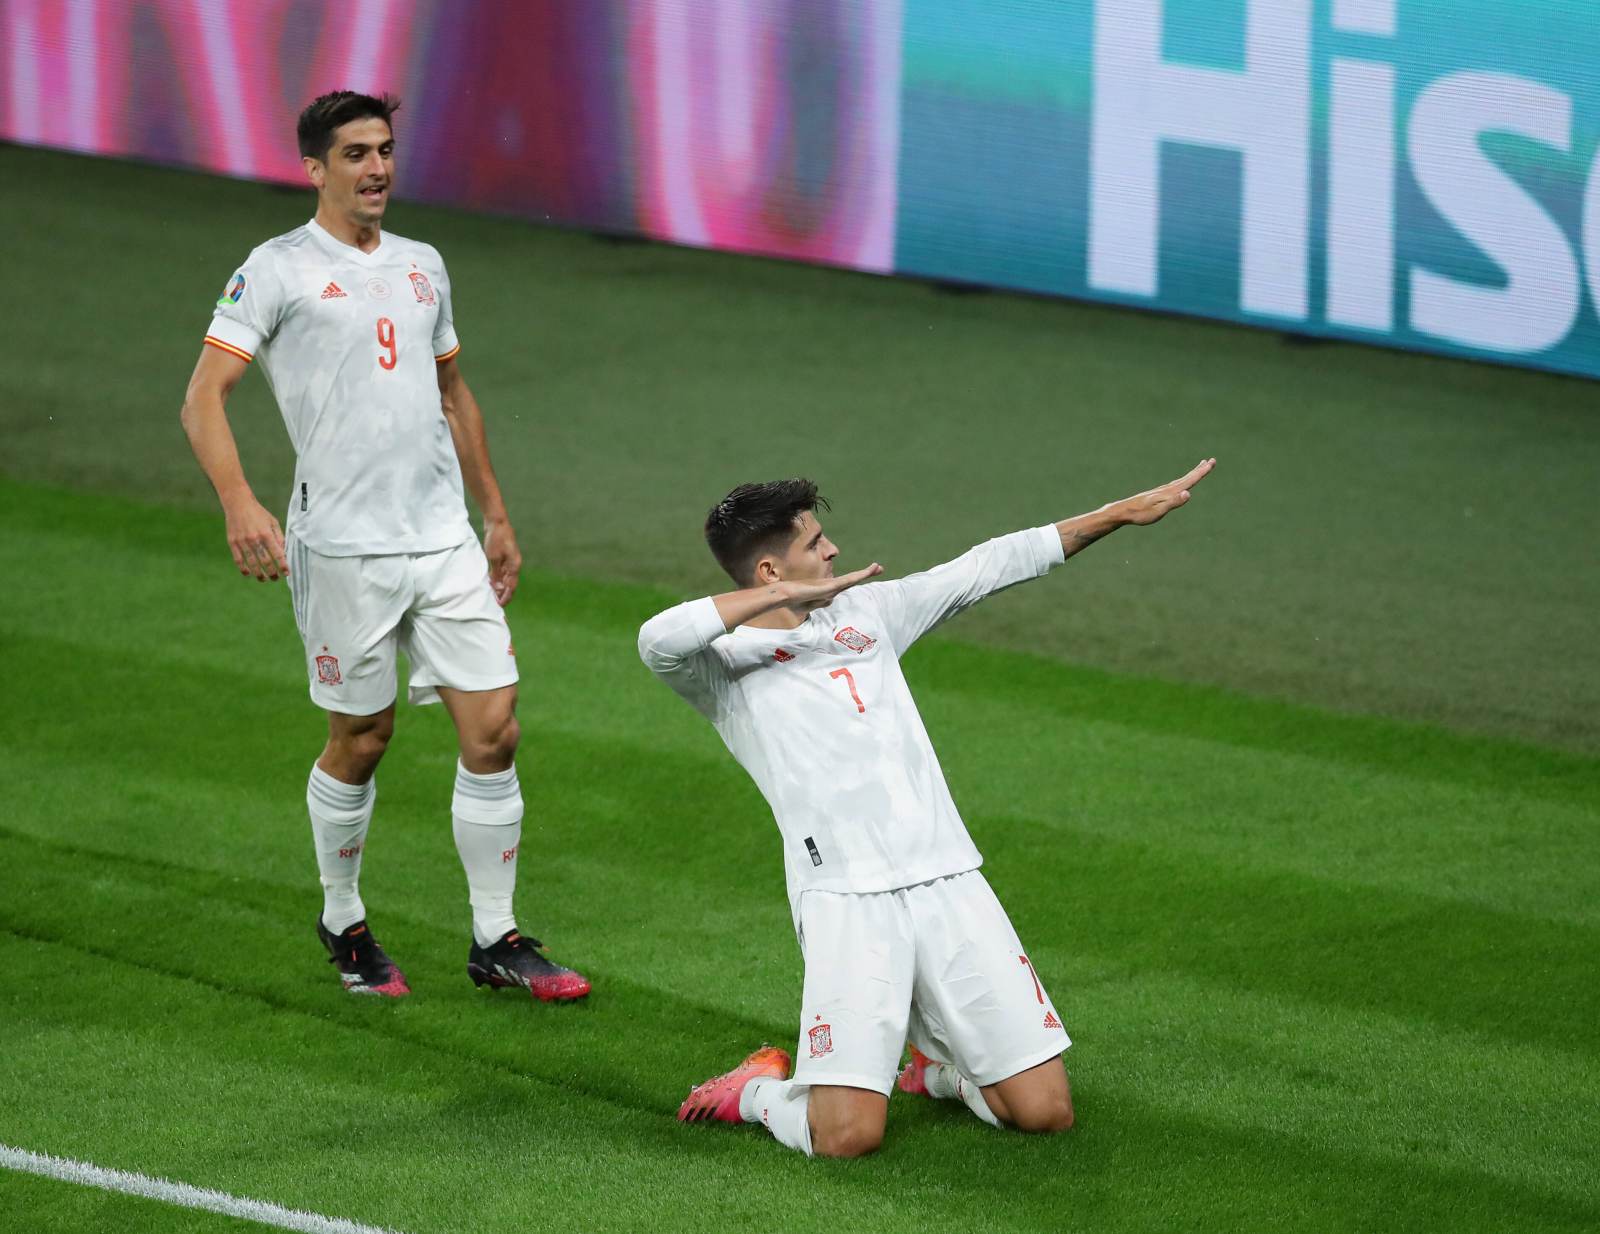 Сборная Испании на флажке обыграла Португалию и стала последним участником плей-офф Лиги наций